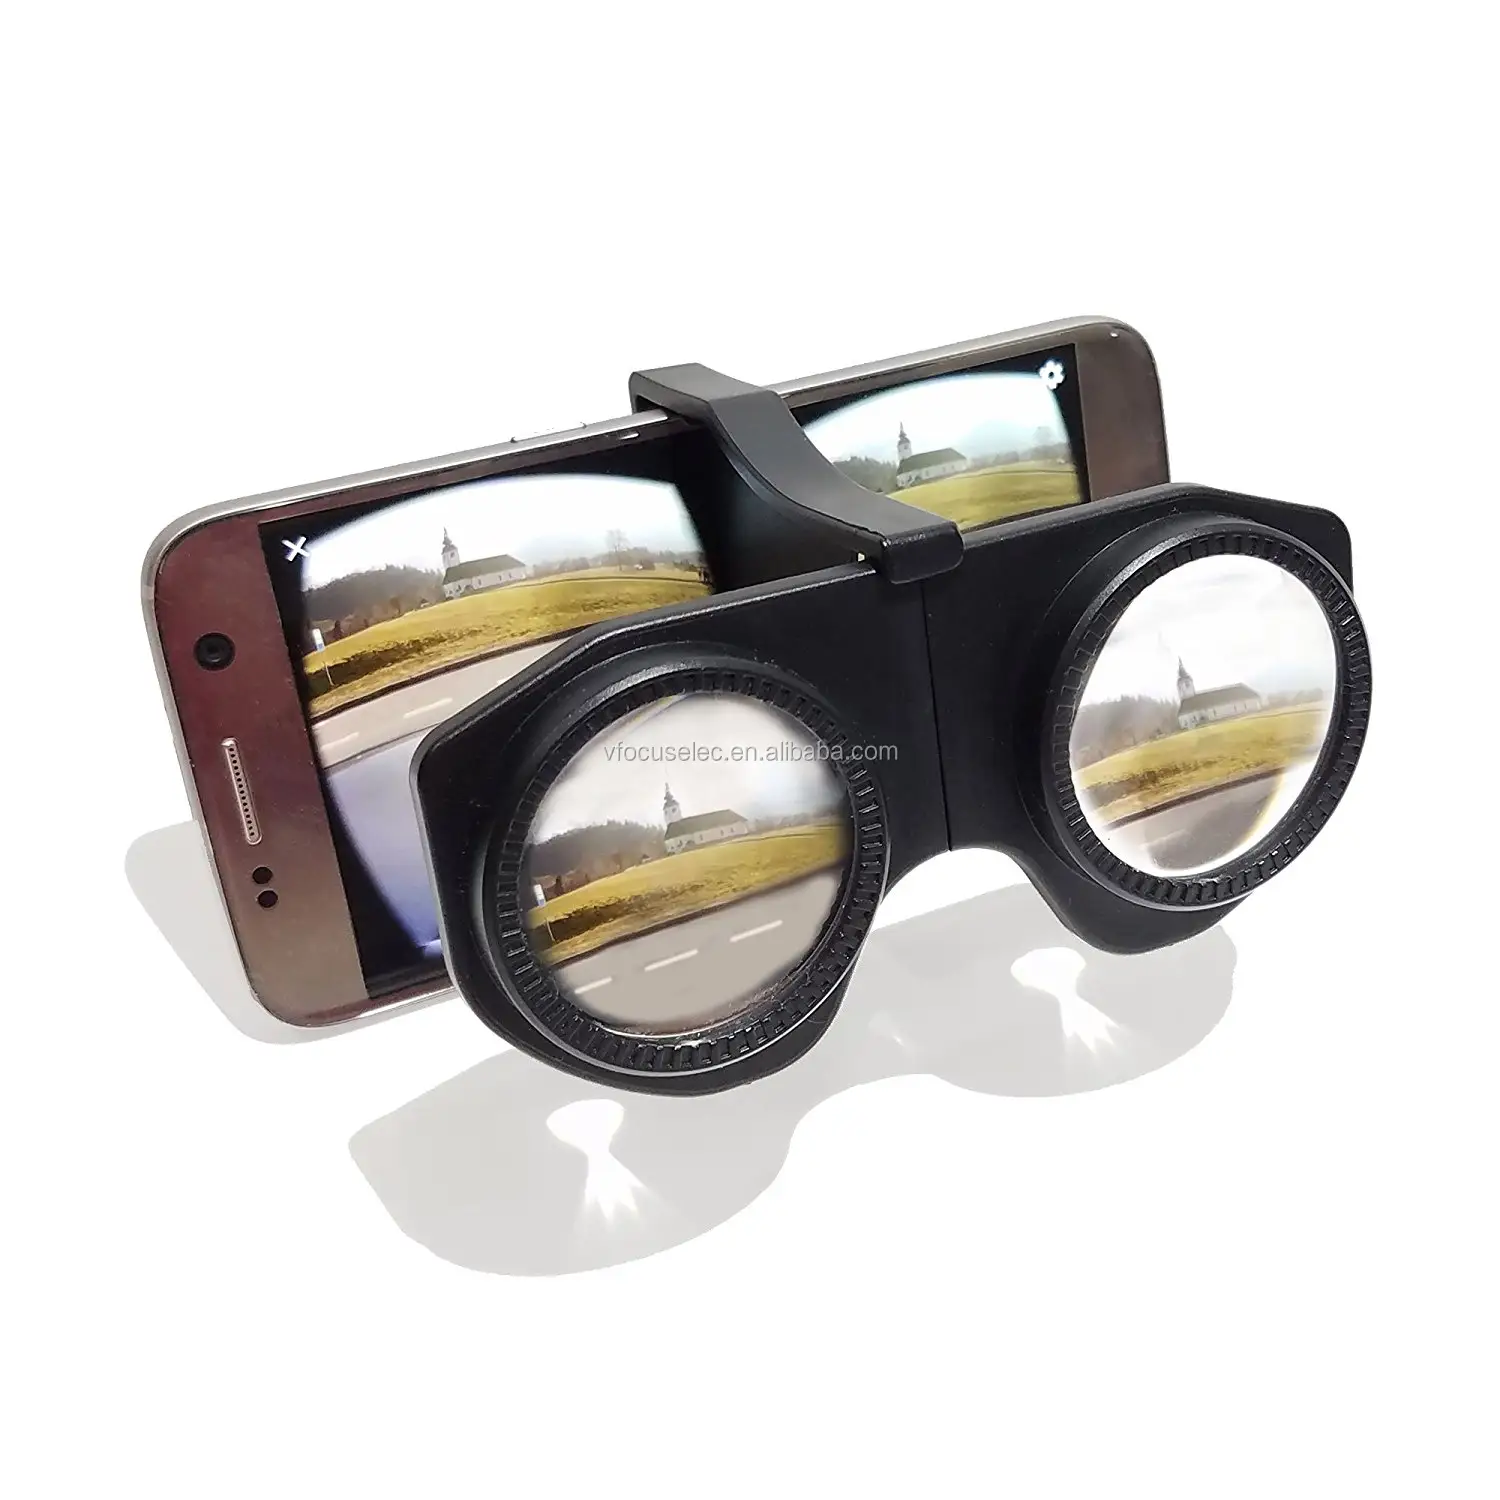 بلاستيكية صغيرة قابلة للطي نظارات الواقع الافتراضي مع HD VR عدسة ، 3D الواقع الافتراضي سماعة متوافق مع الروبوت و iOS الهواتف الذكية